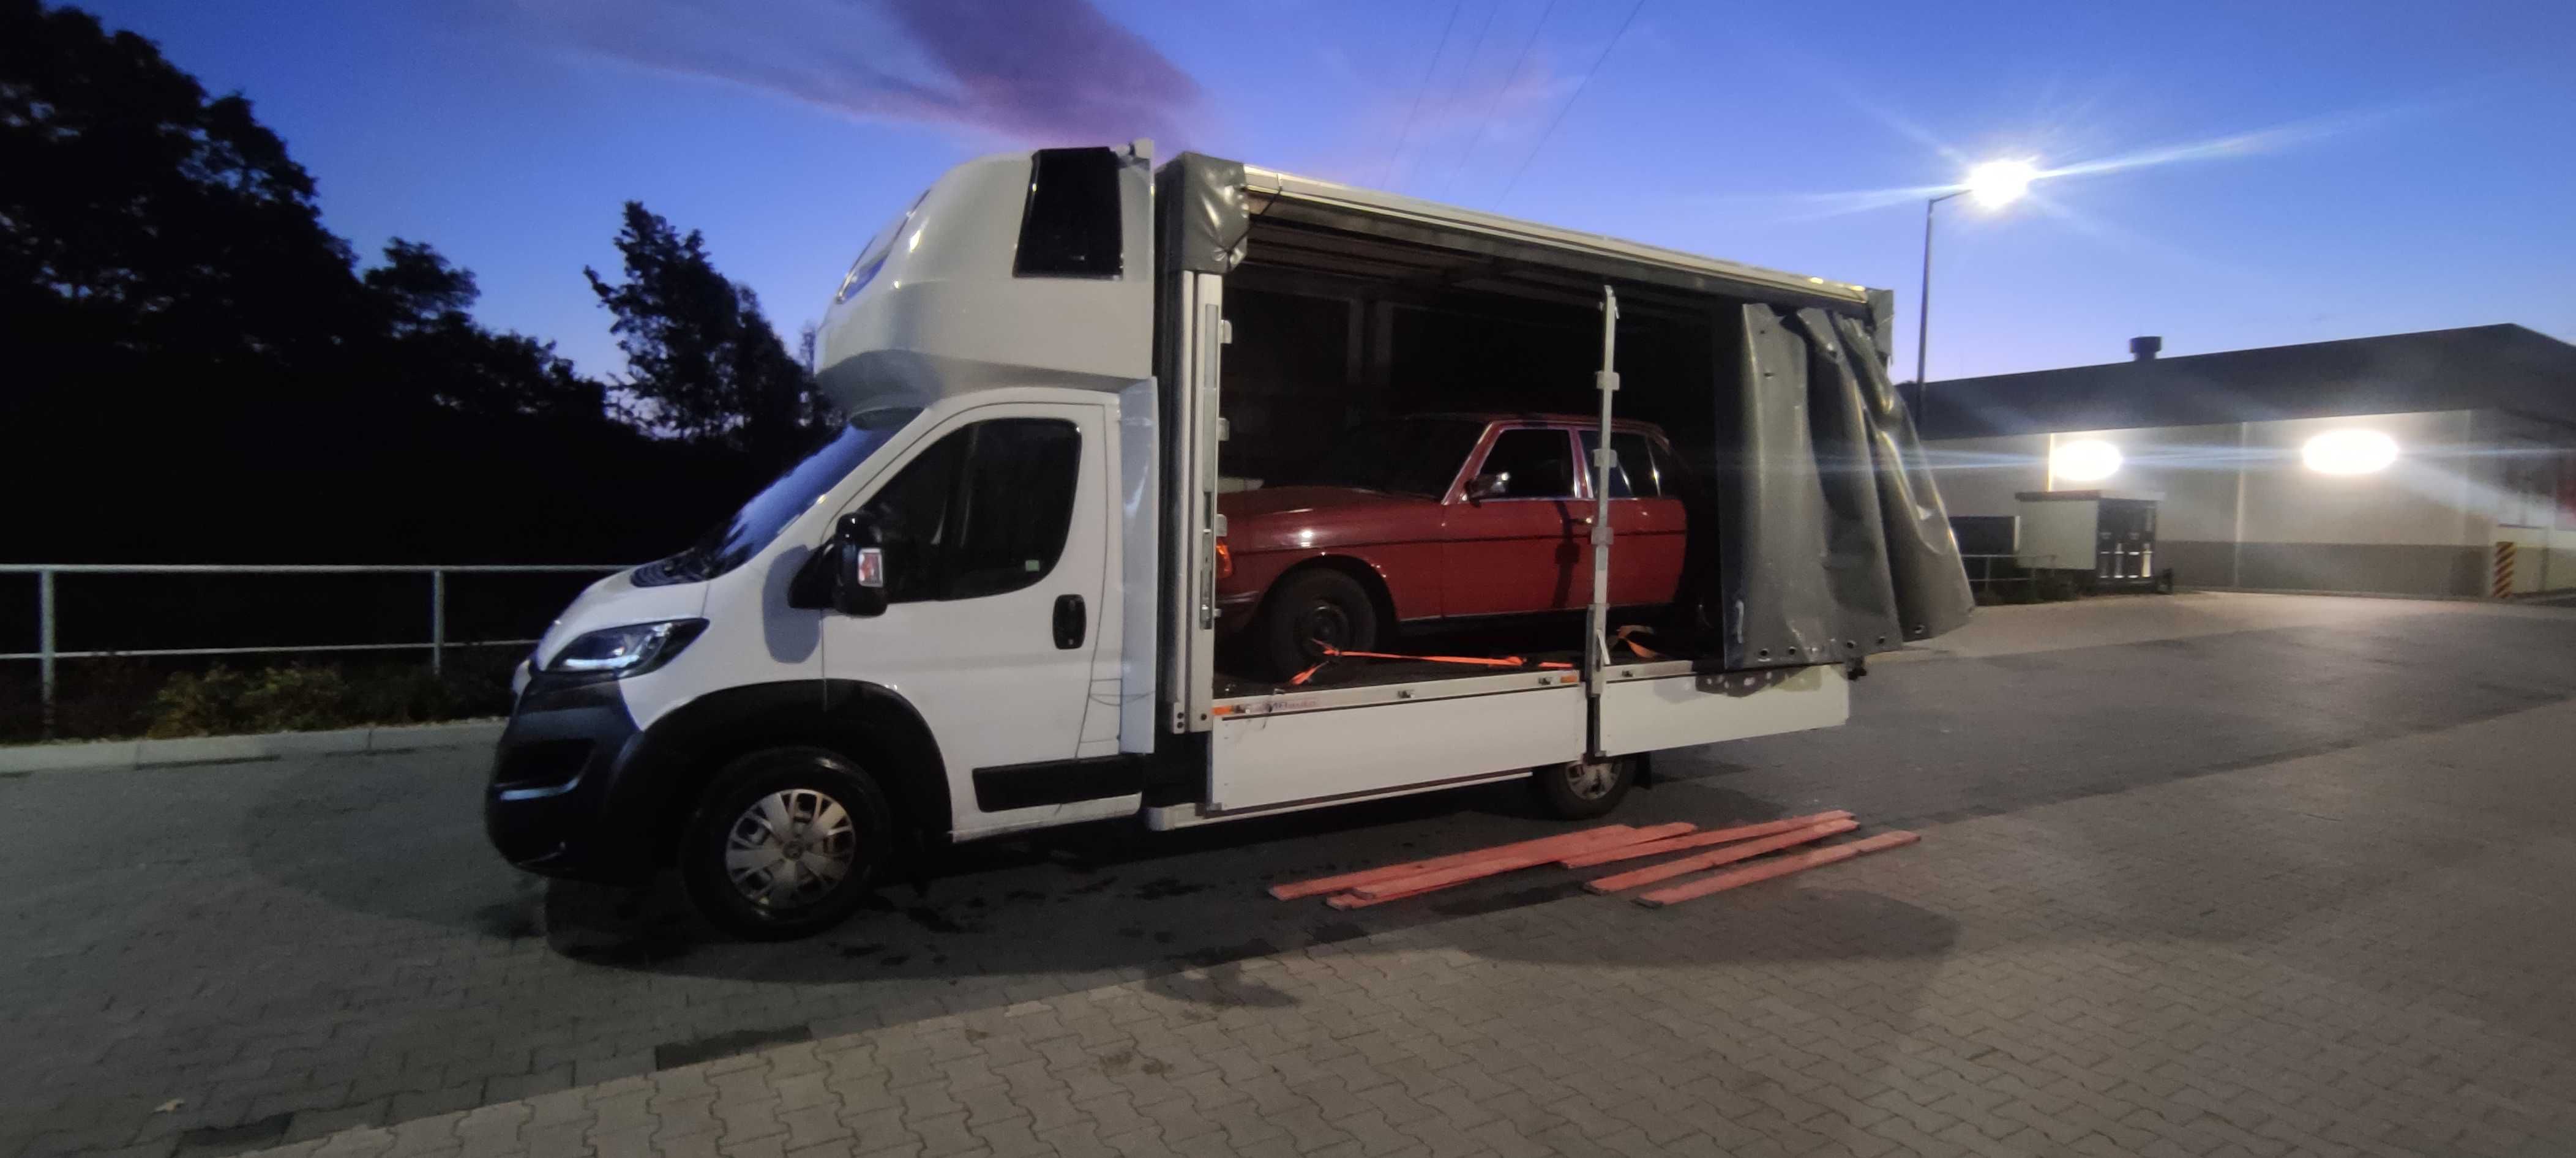 TPS MRÓZ Transport przeprowadzki serwis bagażówka bus tragarze wynajem